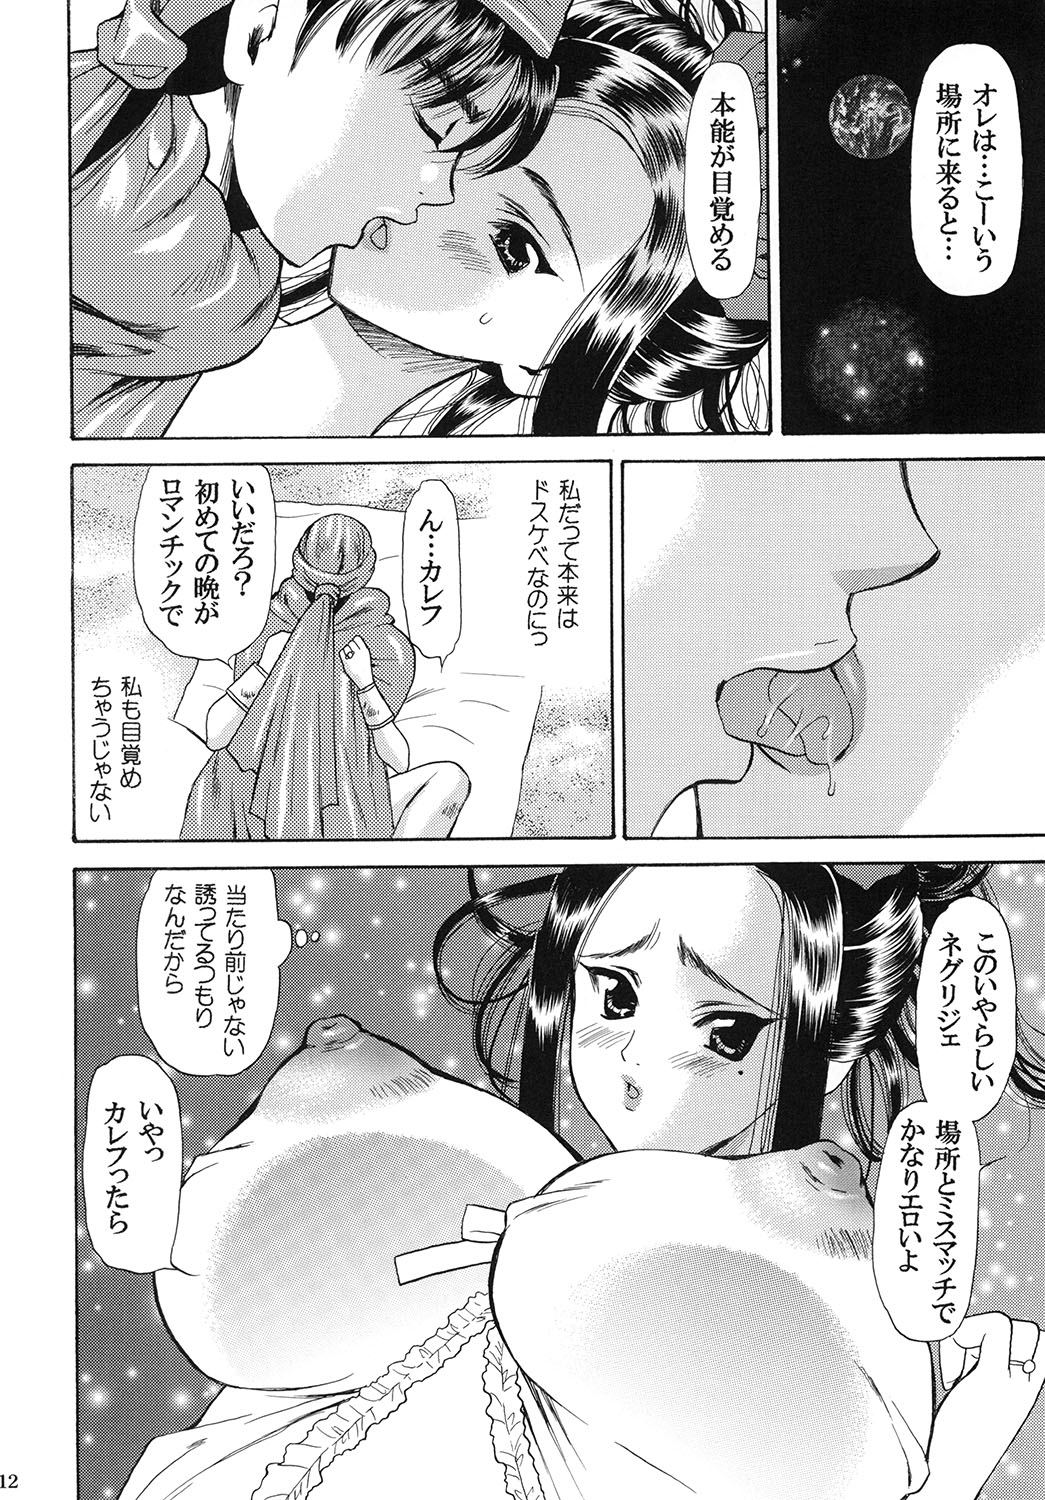 [Houruri (Houruri)] Tsukiyo no Sabaku de Hajimete wo (Dragon Quest V) [蓬瑠璃 (蓬瑠璃)] 月夜の砂漠でハジメテを (ドラゴンクエストV)